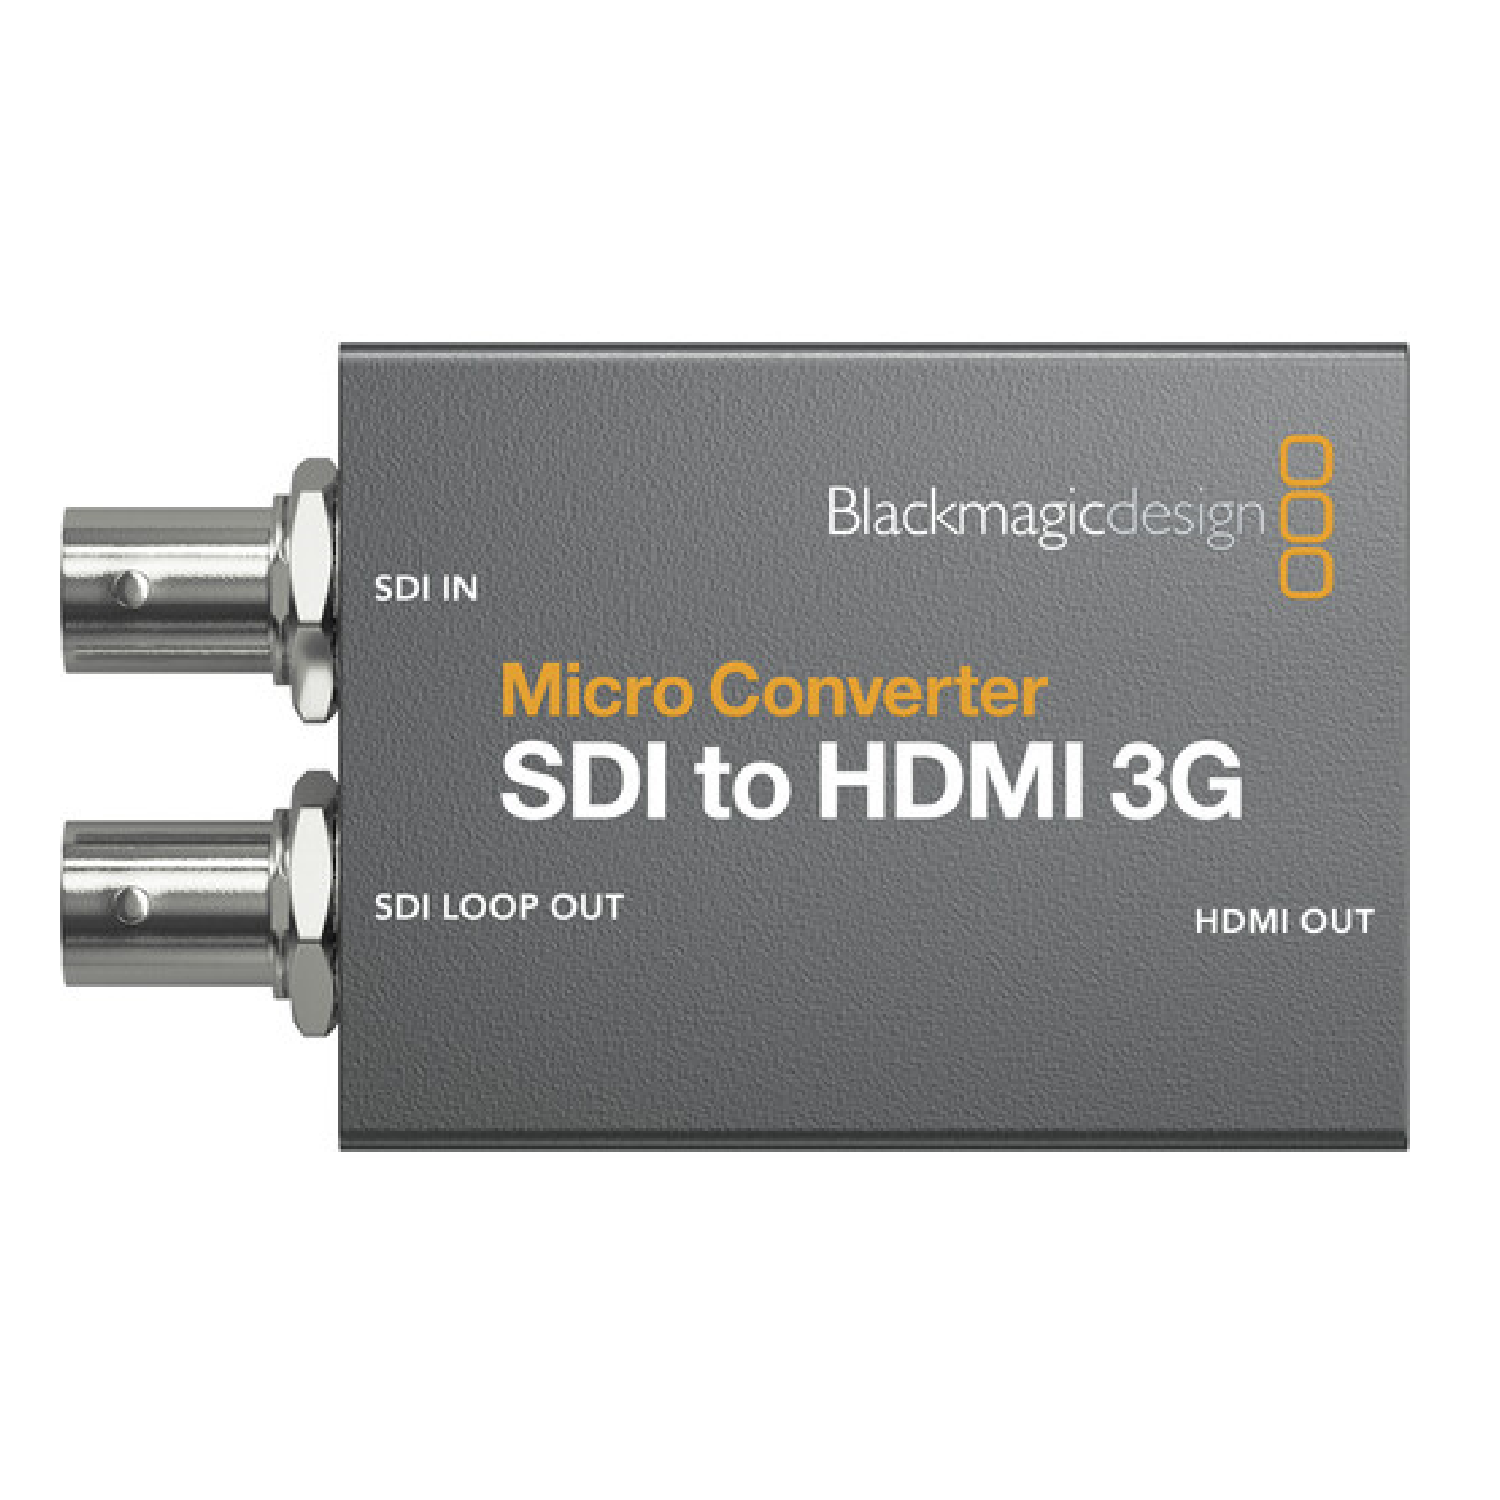 Micro Converter 3G SDI to HDMI   Micro Converter SDI to HDMI 3G blackmagicdesign